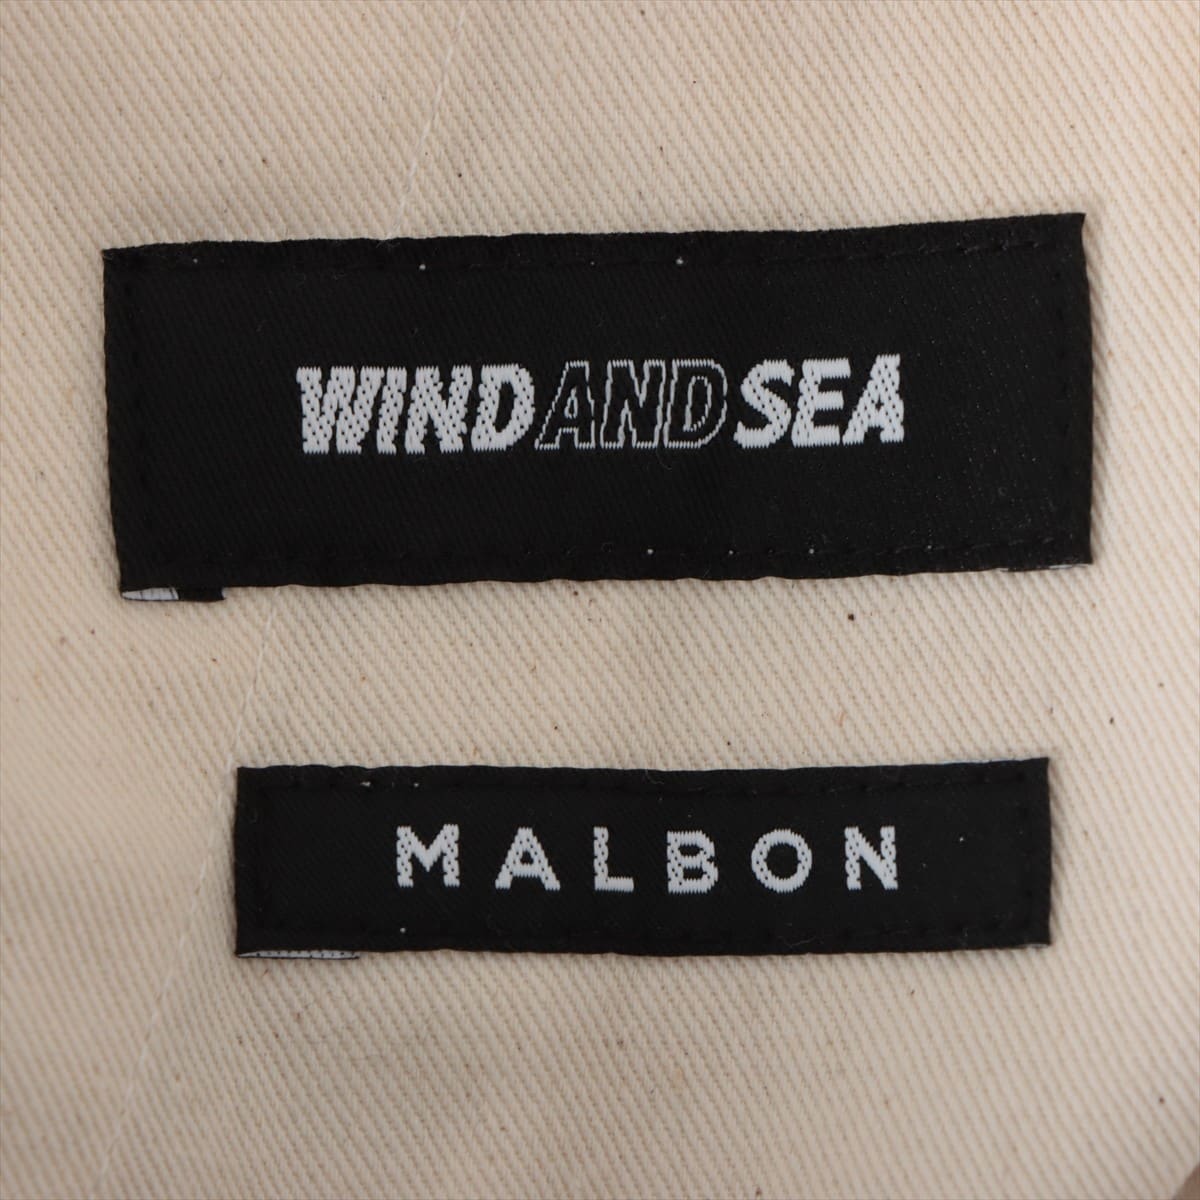 ウィンダンシー×マルボン コットン ショートパンツ S メンズ ホワイト  WDS-MALBON-13